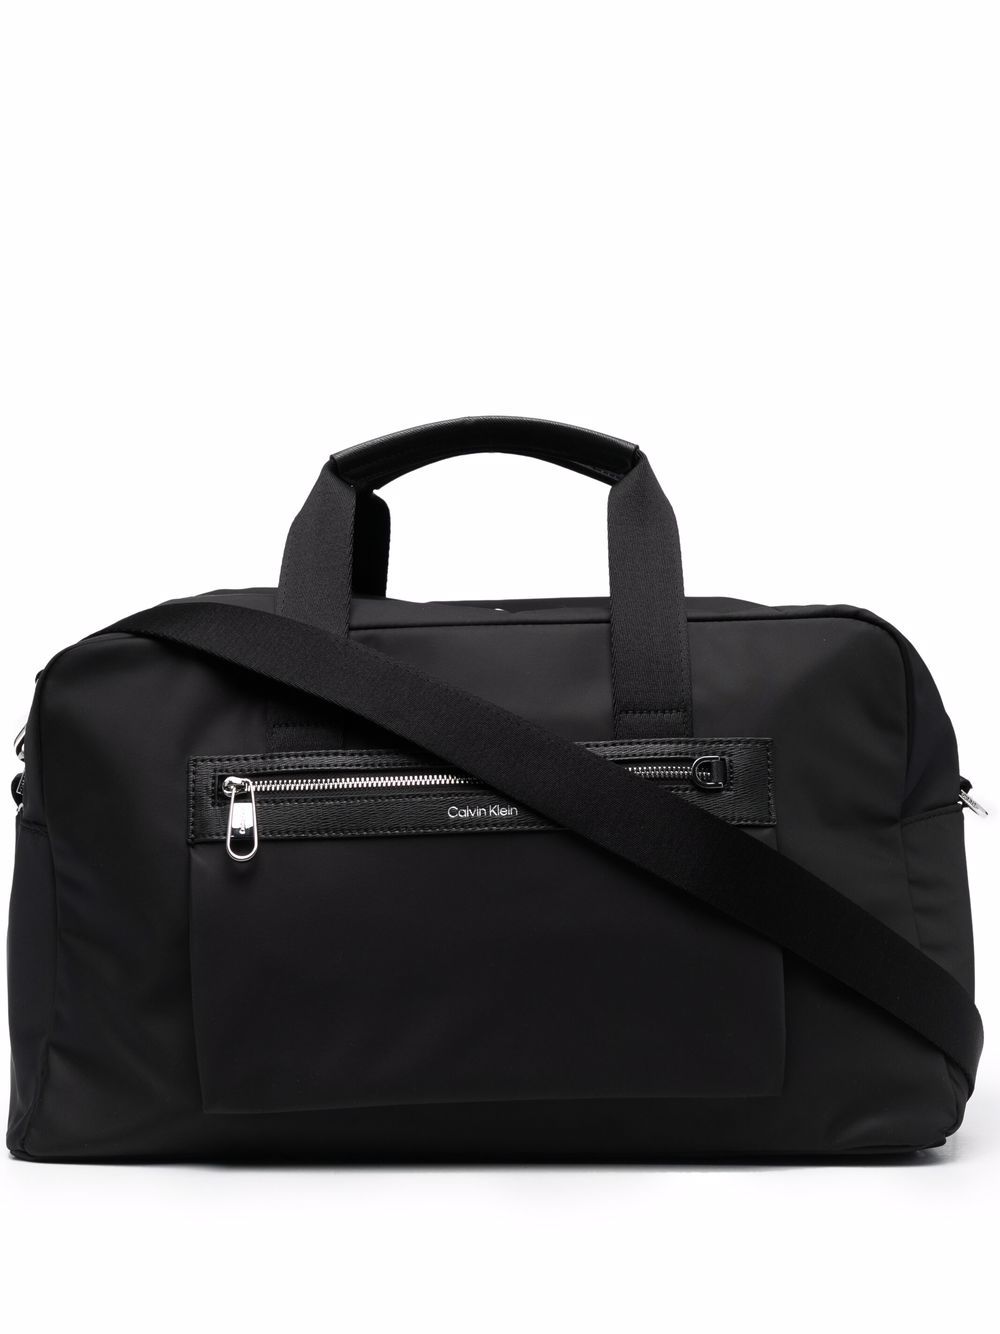 Calvin Klein Repreve Weekender bag - Black von Calvin Klein